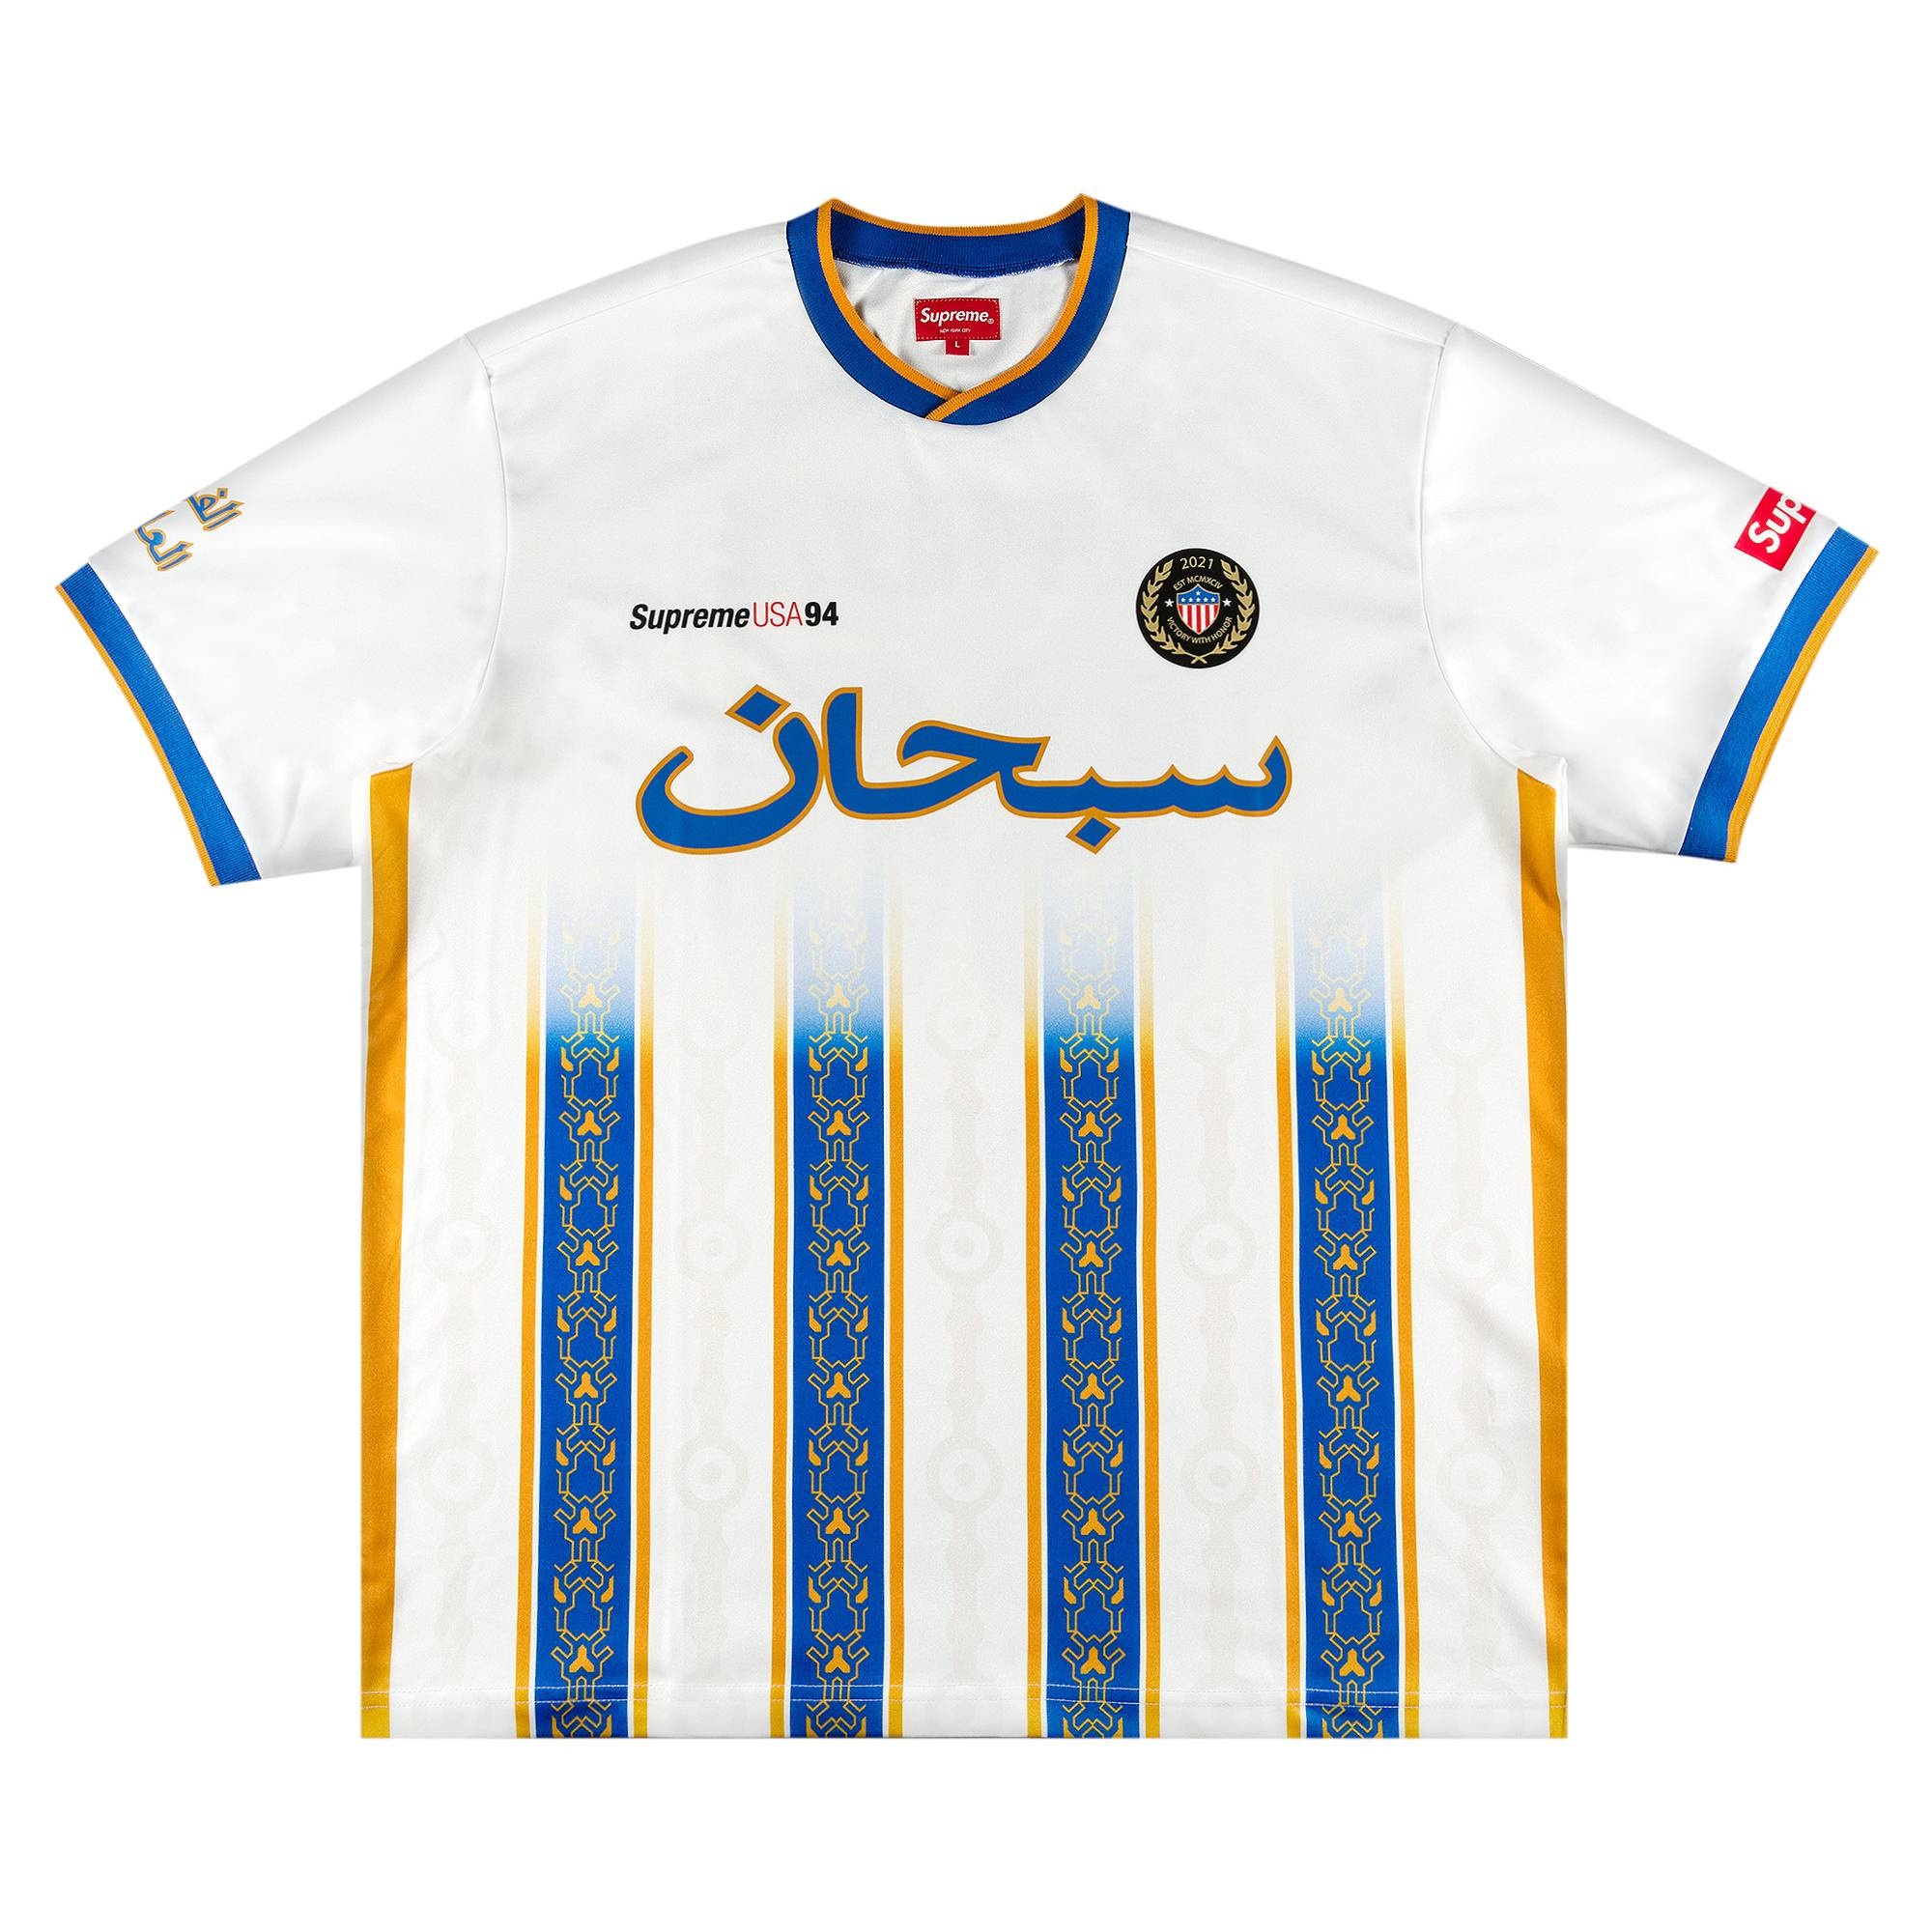 ビーニーSupreme Arabic Logo Soccer Jersey